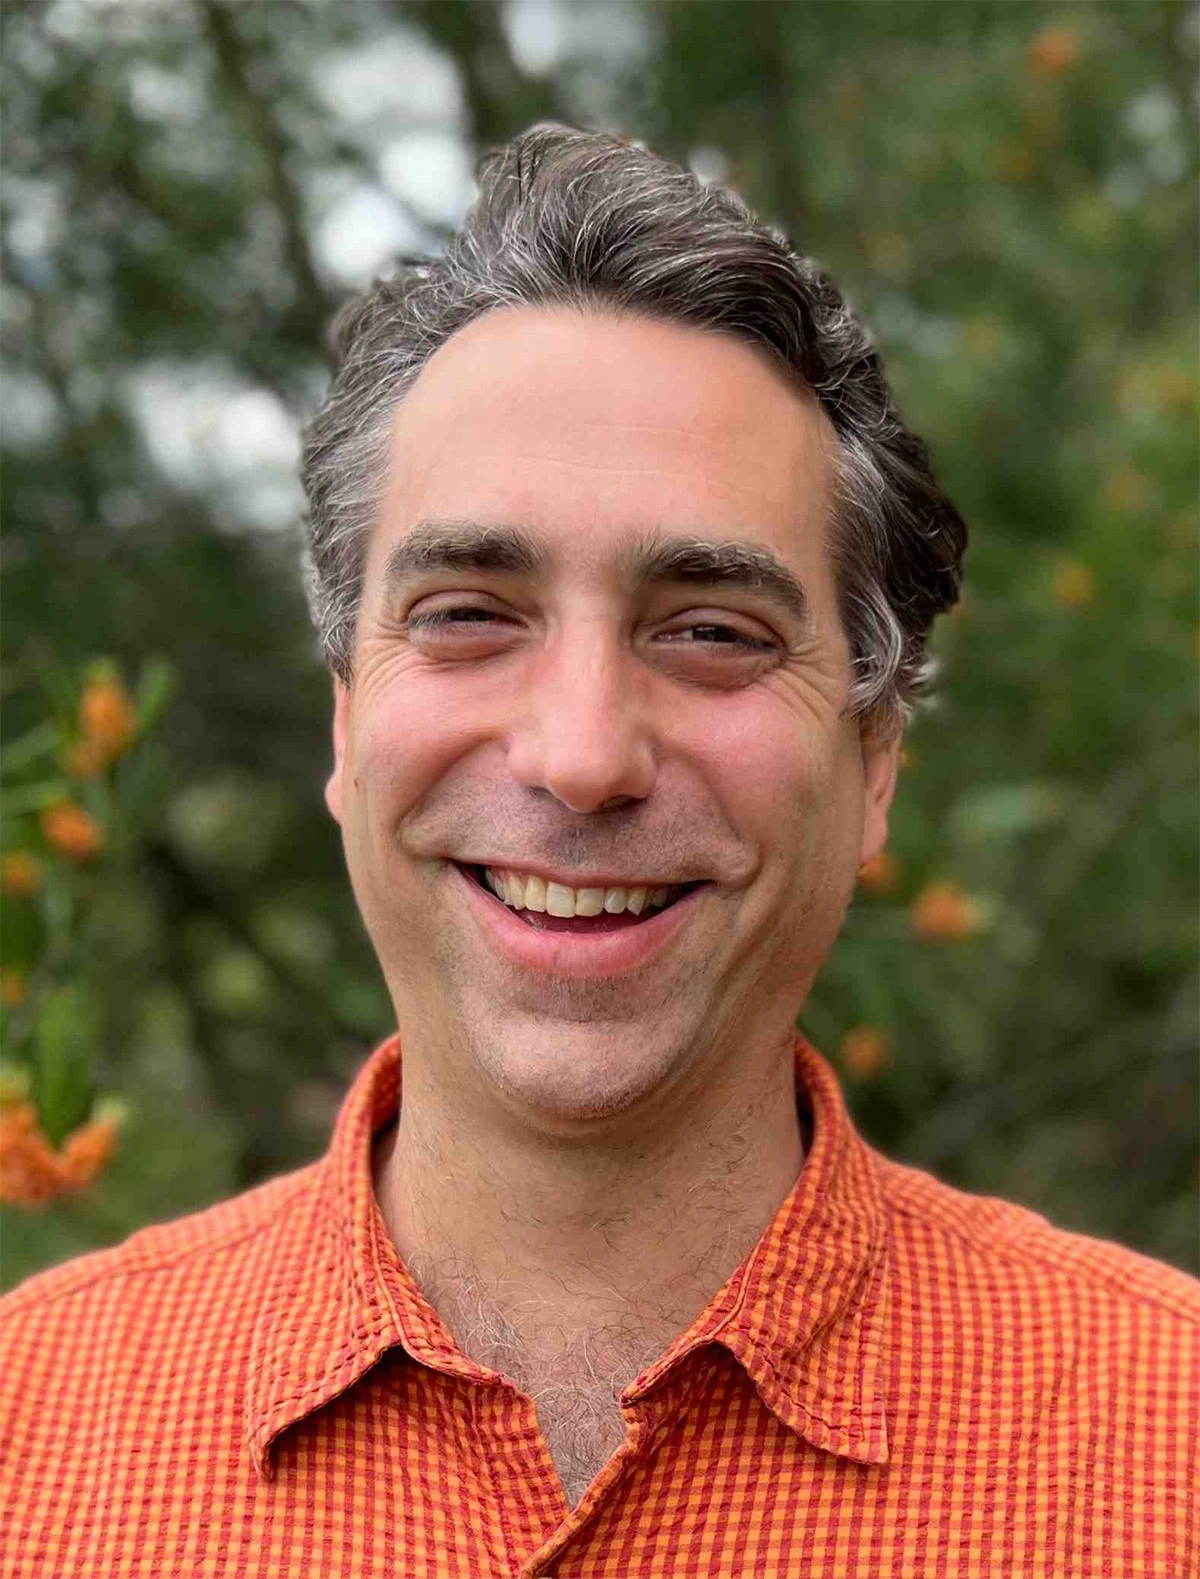 MSU Associate Professor Gregory Bonito